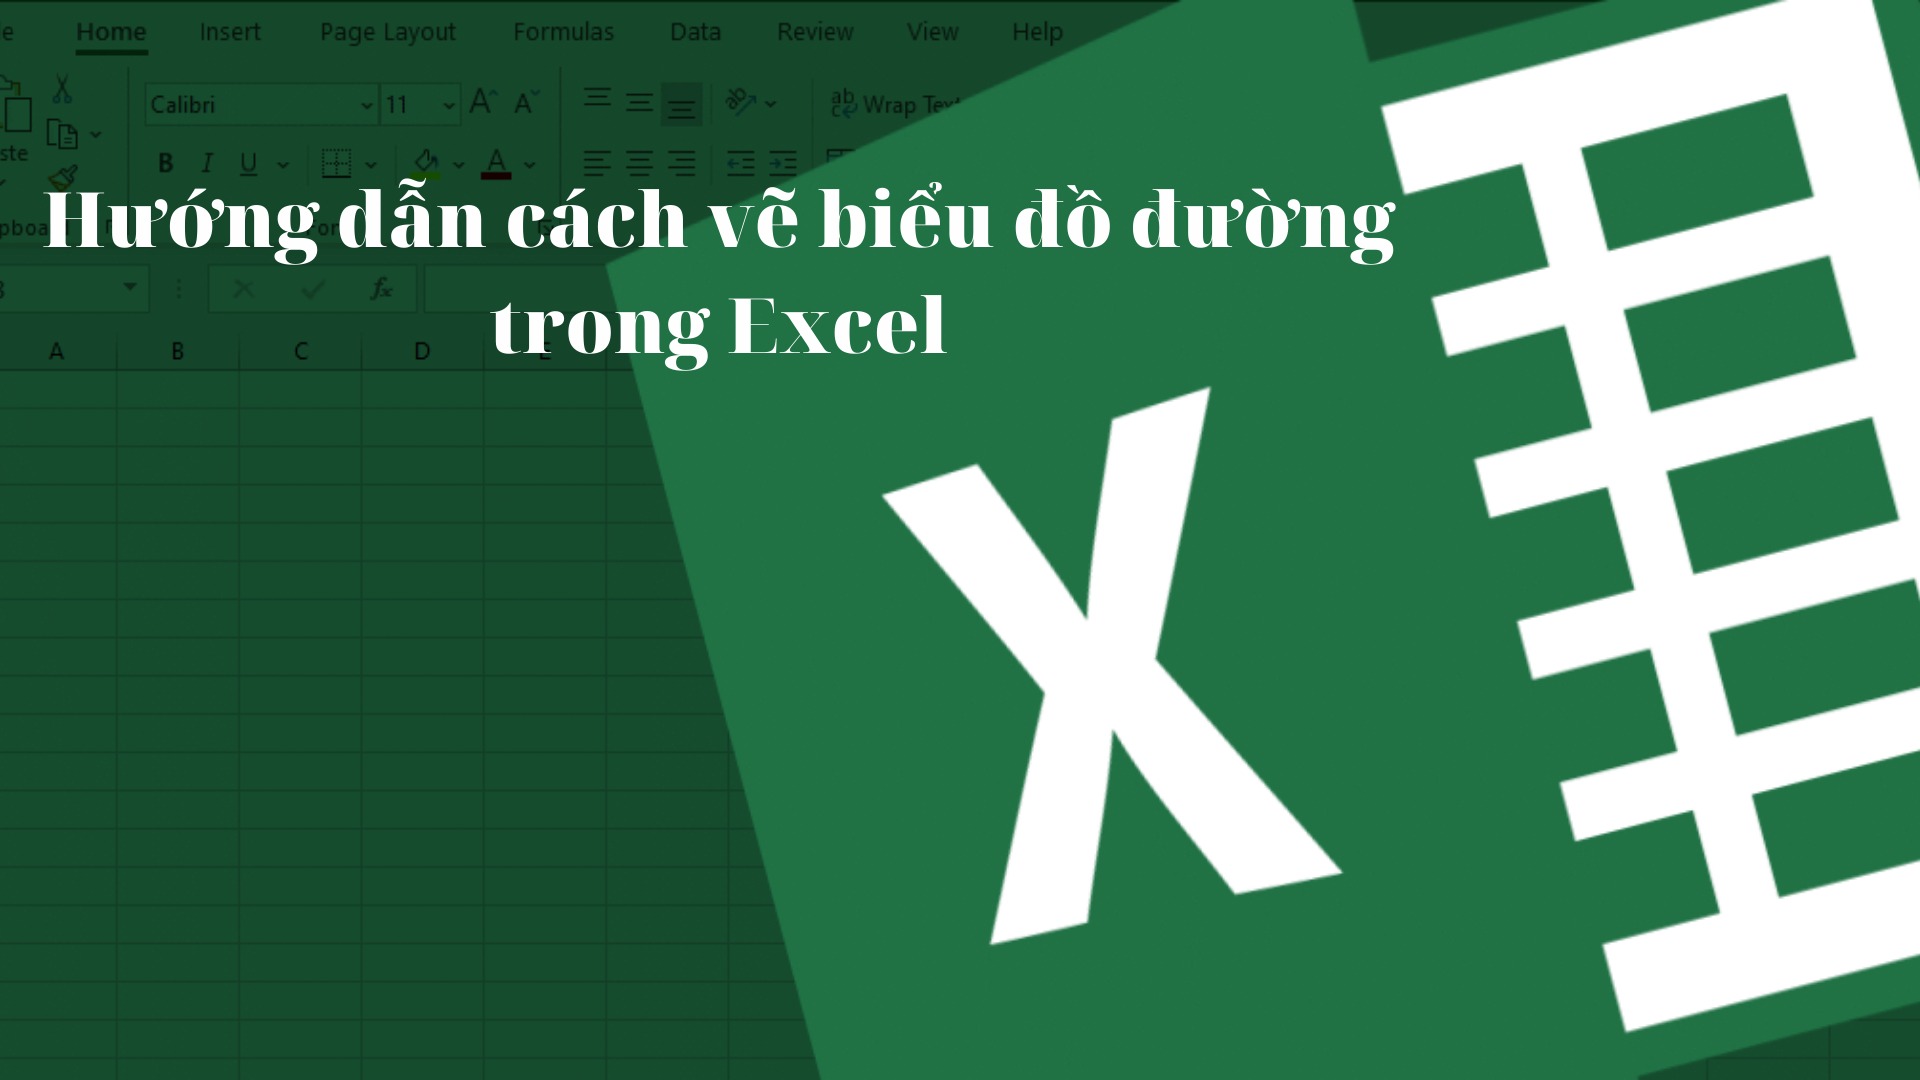 Cách vẽ biểu đồ đường trong Excel vô cùng đơn giản và hữu ích